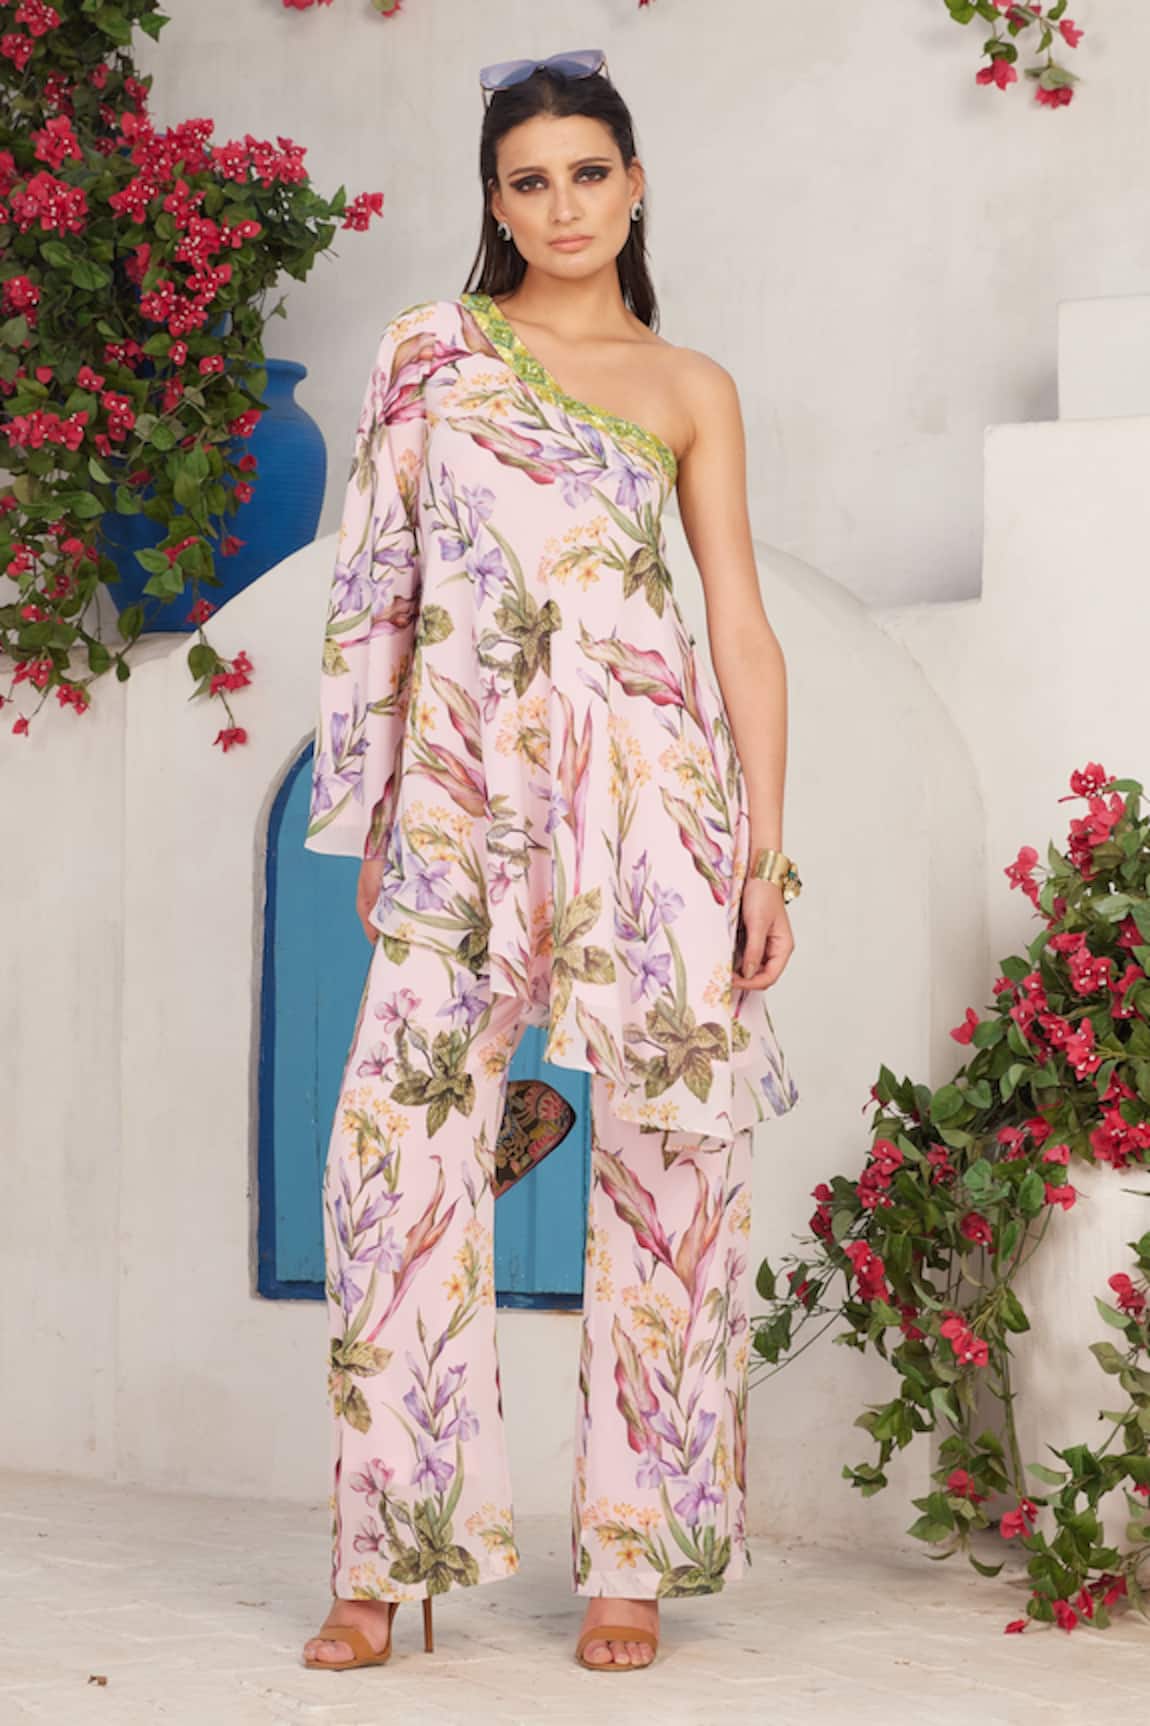 Reynu Taandon Floral Print One Shoulder Top & Pant Co-ord Set